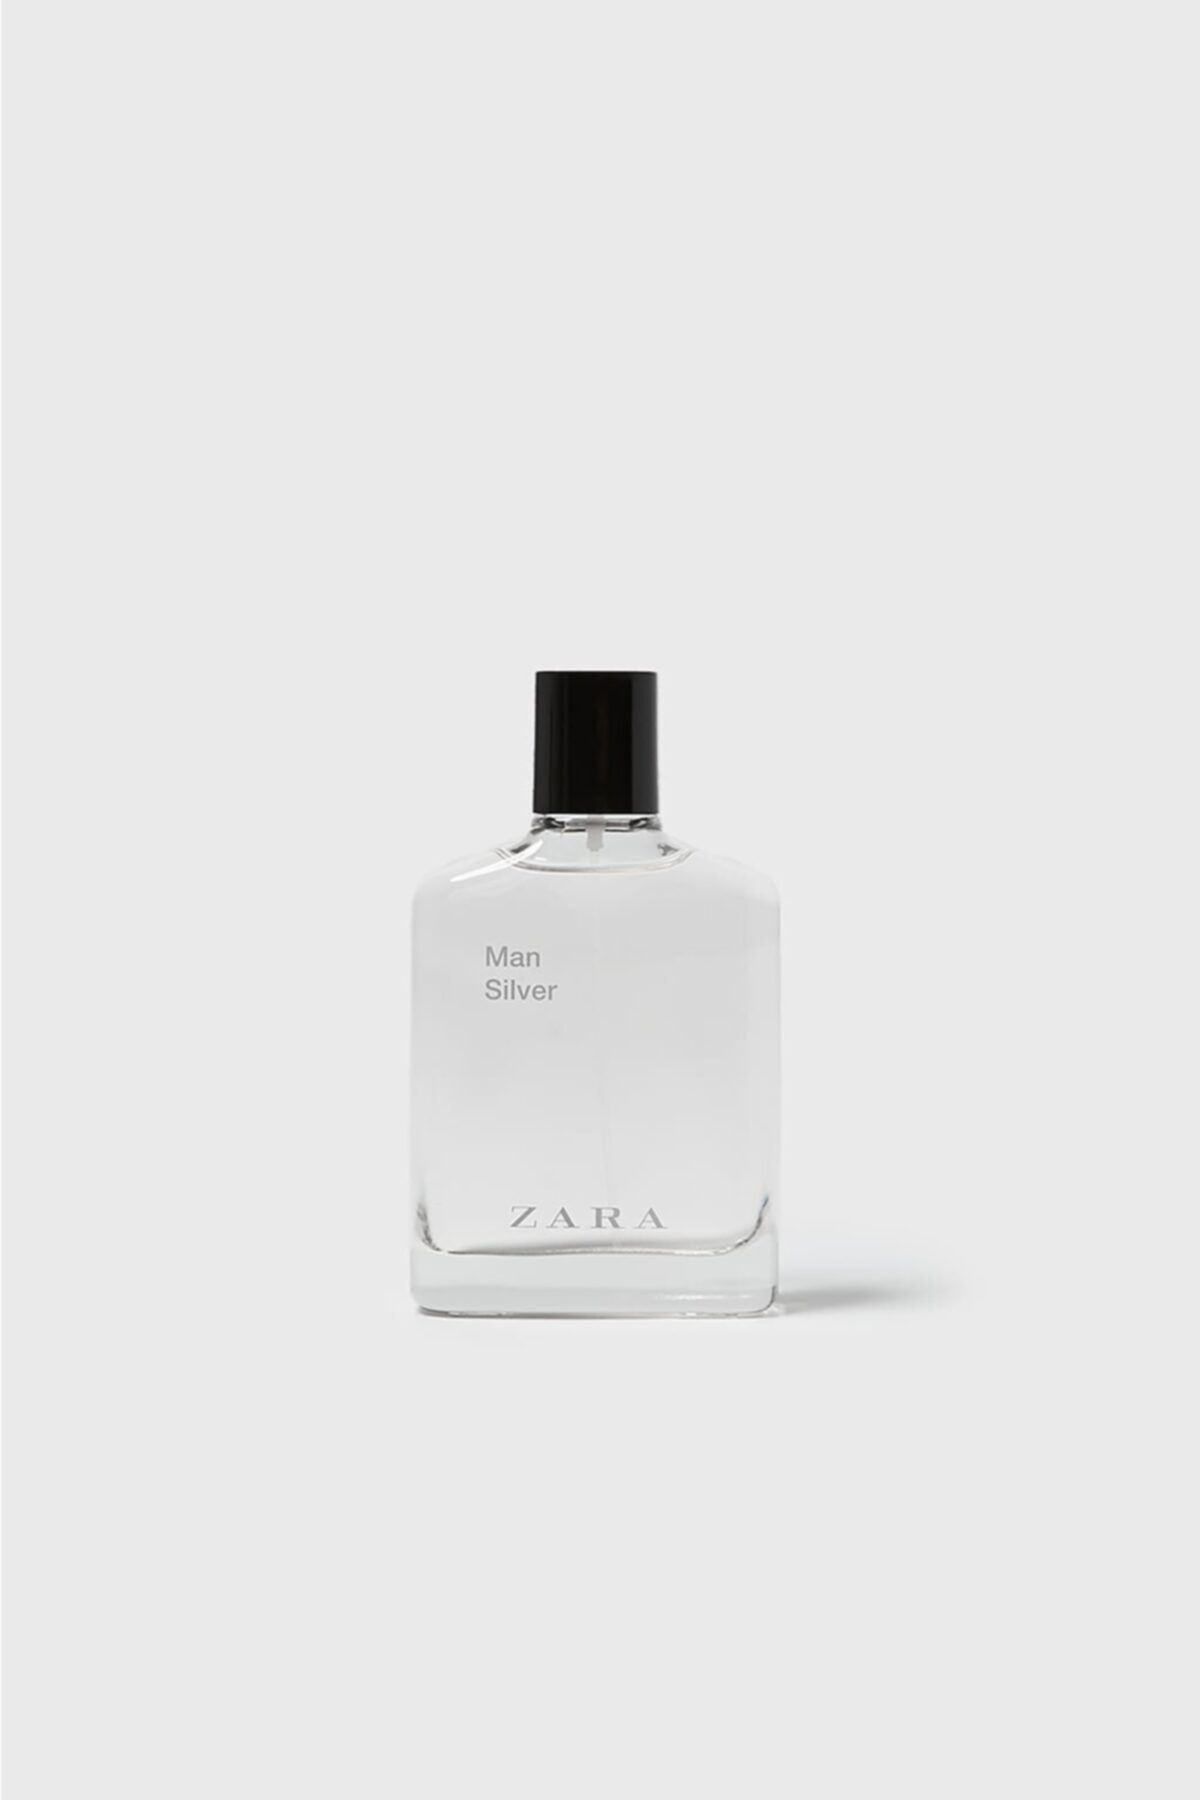 Zara Man Silver ادوتویلت 100 ml